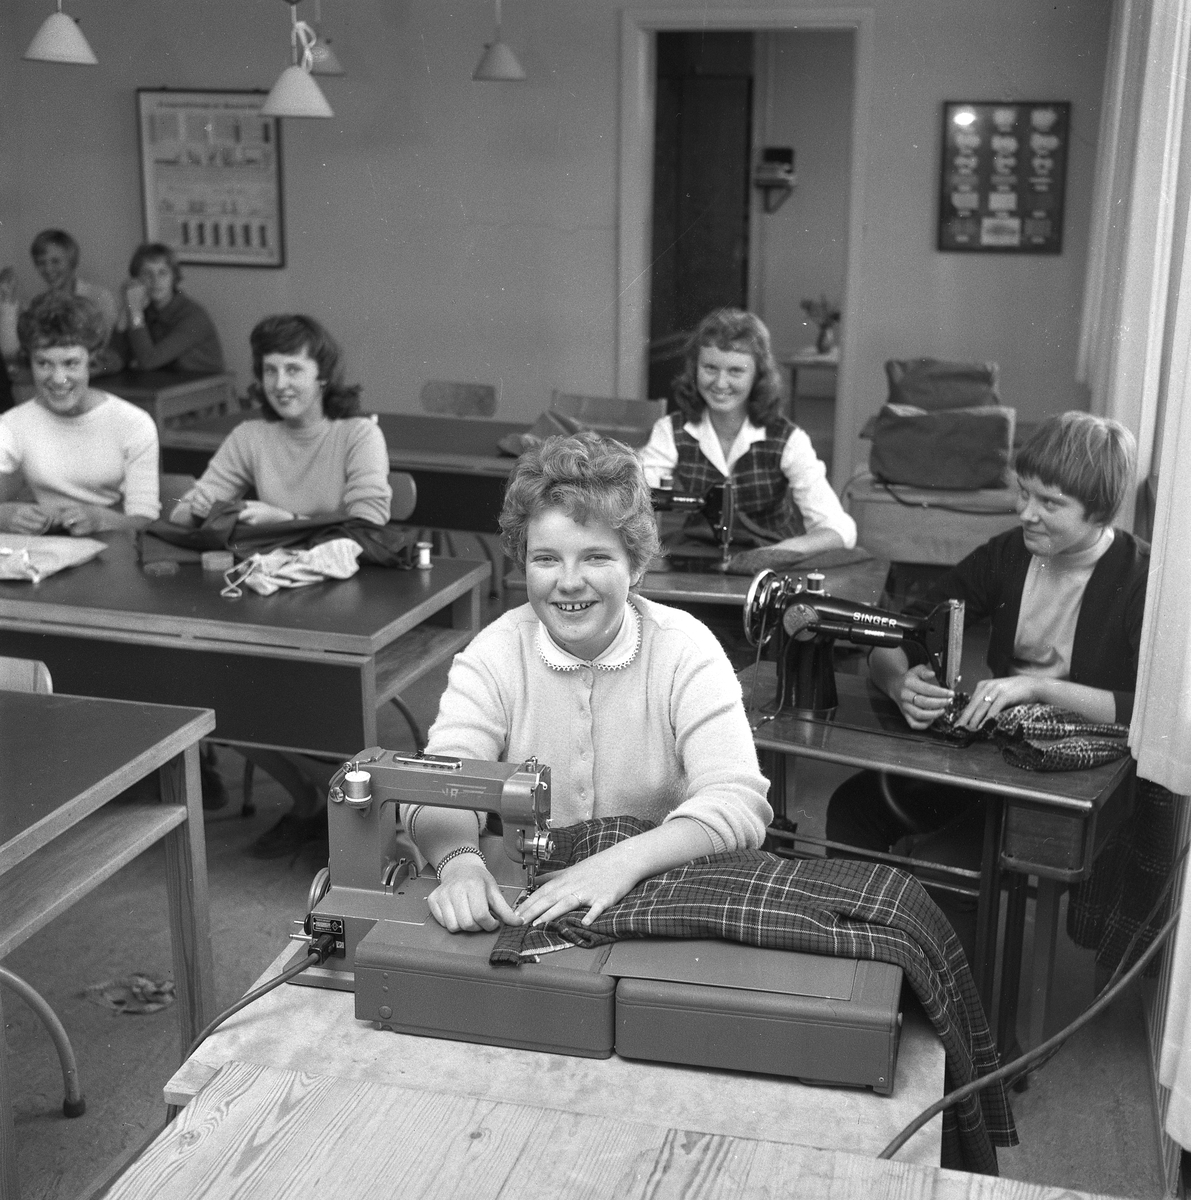 ÖPR 25 år. Örebro praktiska realskolan behöver fler lokaler.
30 september 1958.